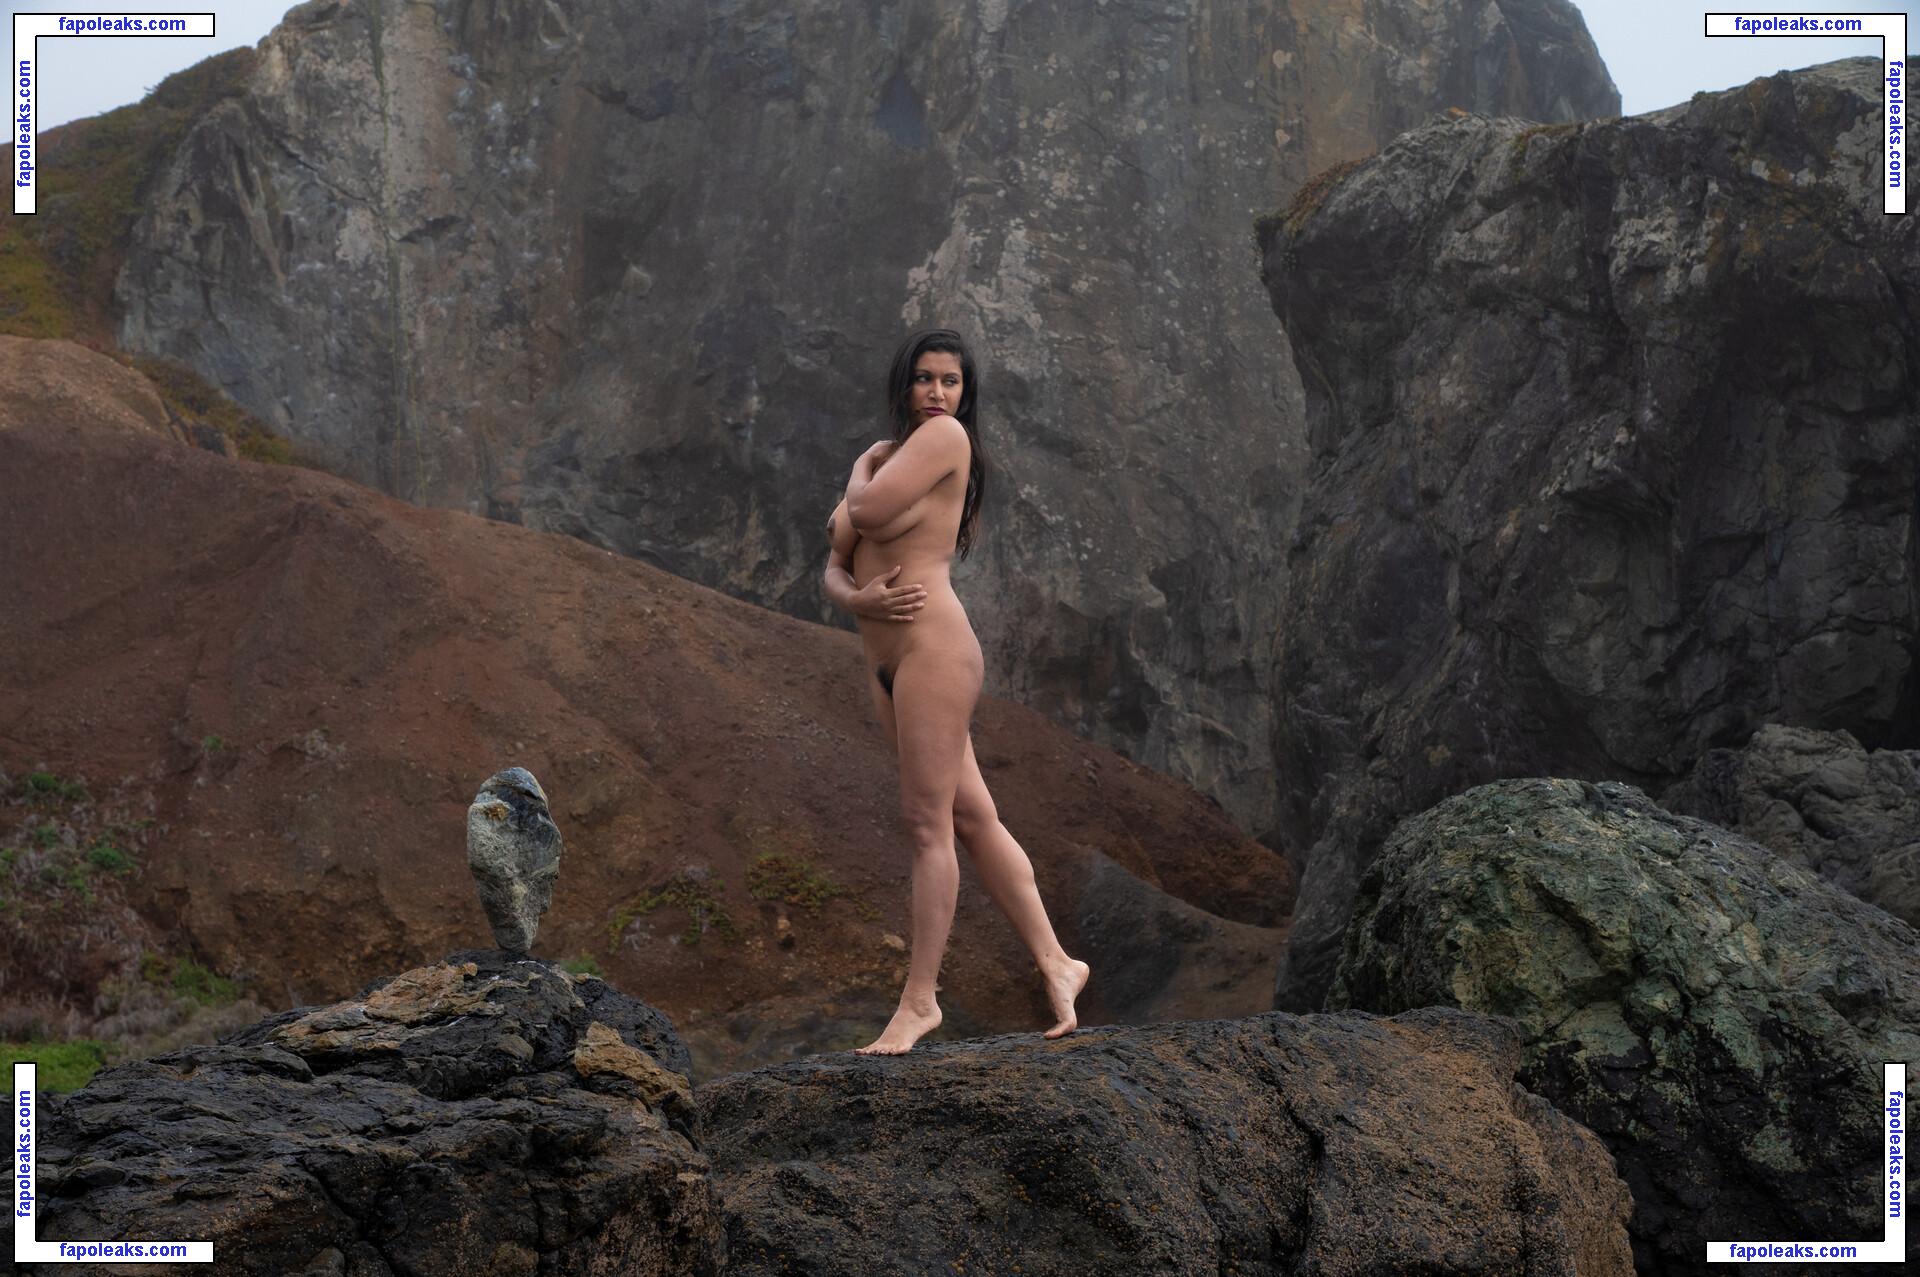 Dakini / Carla White / Devi / googlymonstor nude photo #0016 from OnlyFans